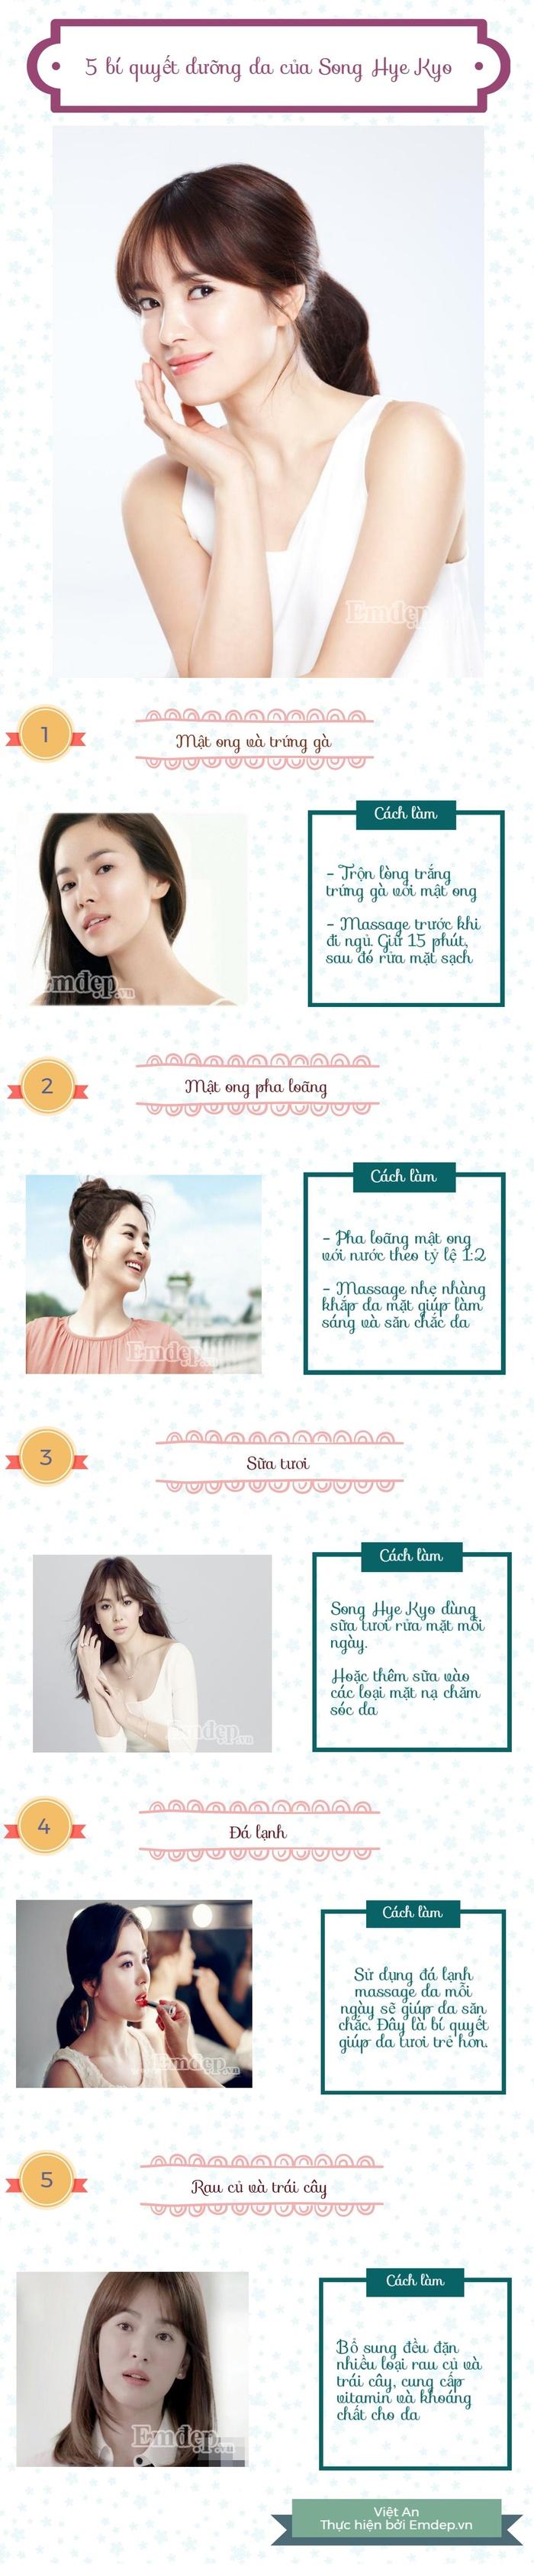 Hướng dẫn 5 công thức làm trắng da từ tự nhiên của ngọc nữ Hàn Quốc Song Hye Kyo